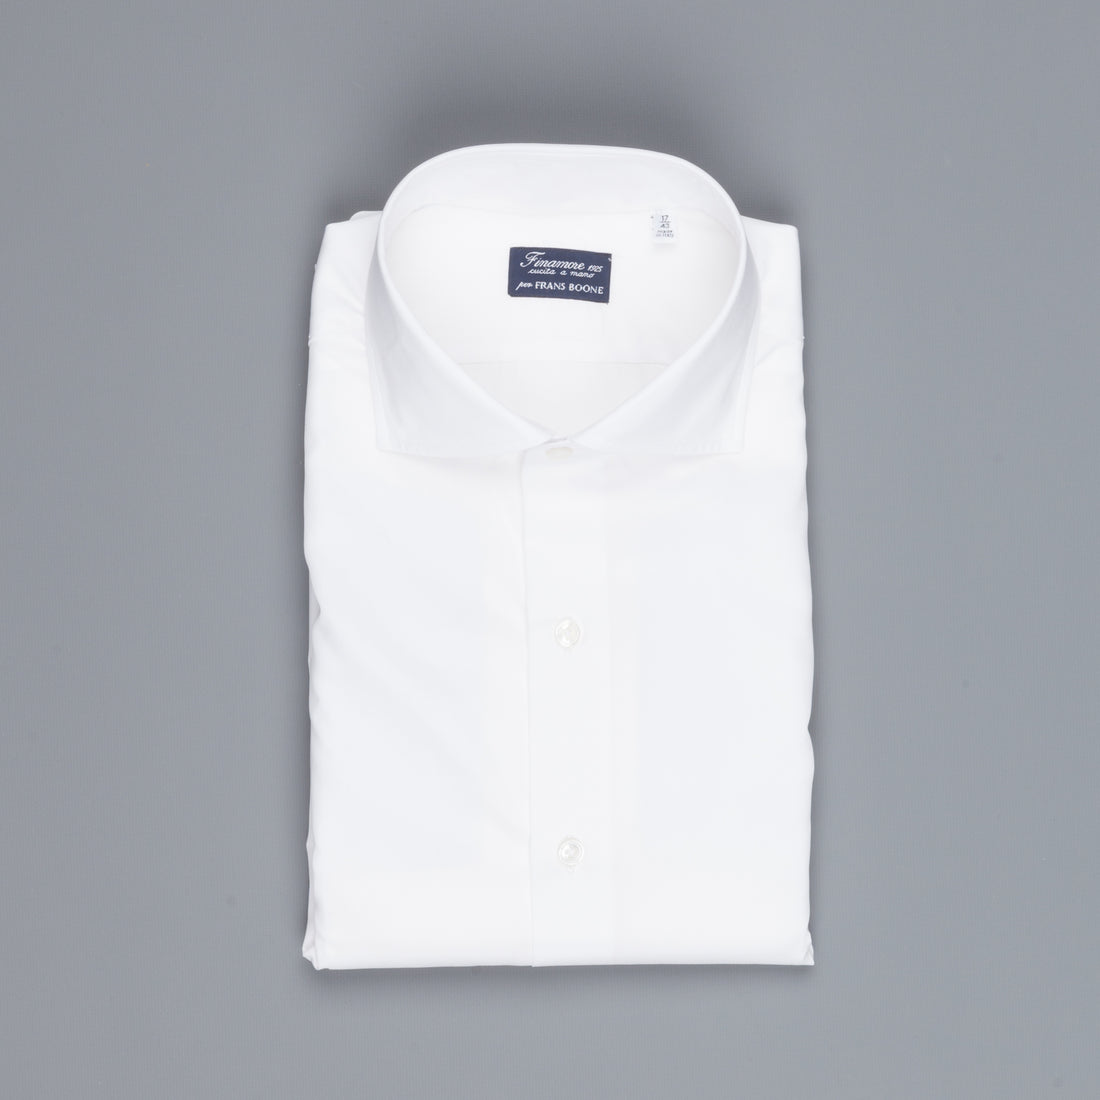 Finamore Napoli Shirt Collar Eduardo White Alumo Voyage poplin